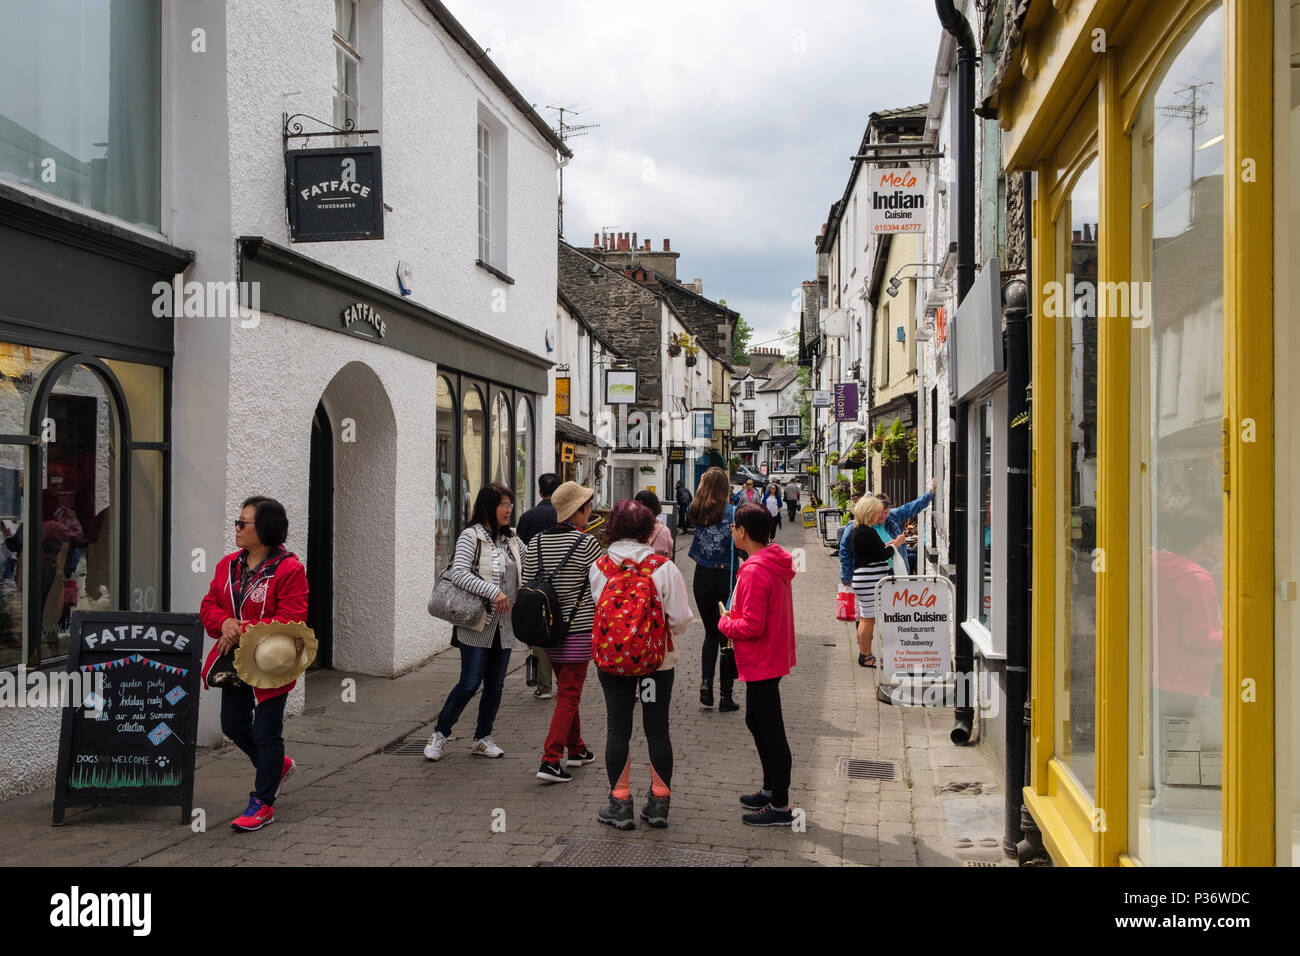 Les touristes et les boutiques de la rue étroite de la vieille ville de Lake District. Ash Street, Bowness on Windermere, Cumbria, England, UK, Grande-Bretagne Banque D'Images